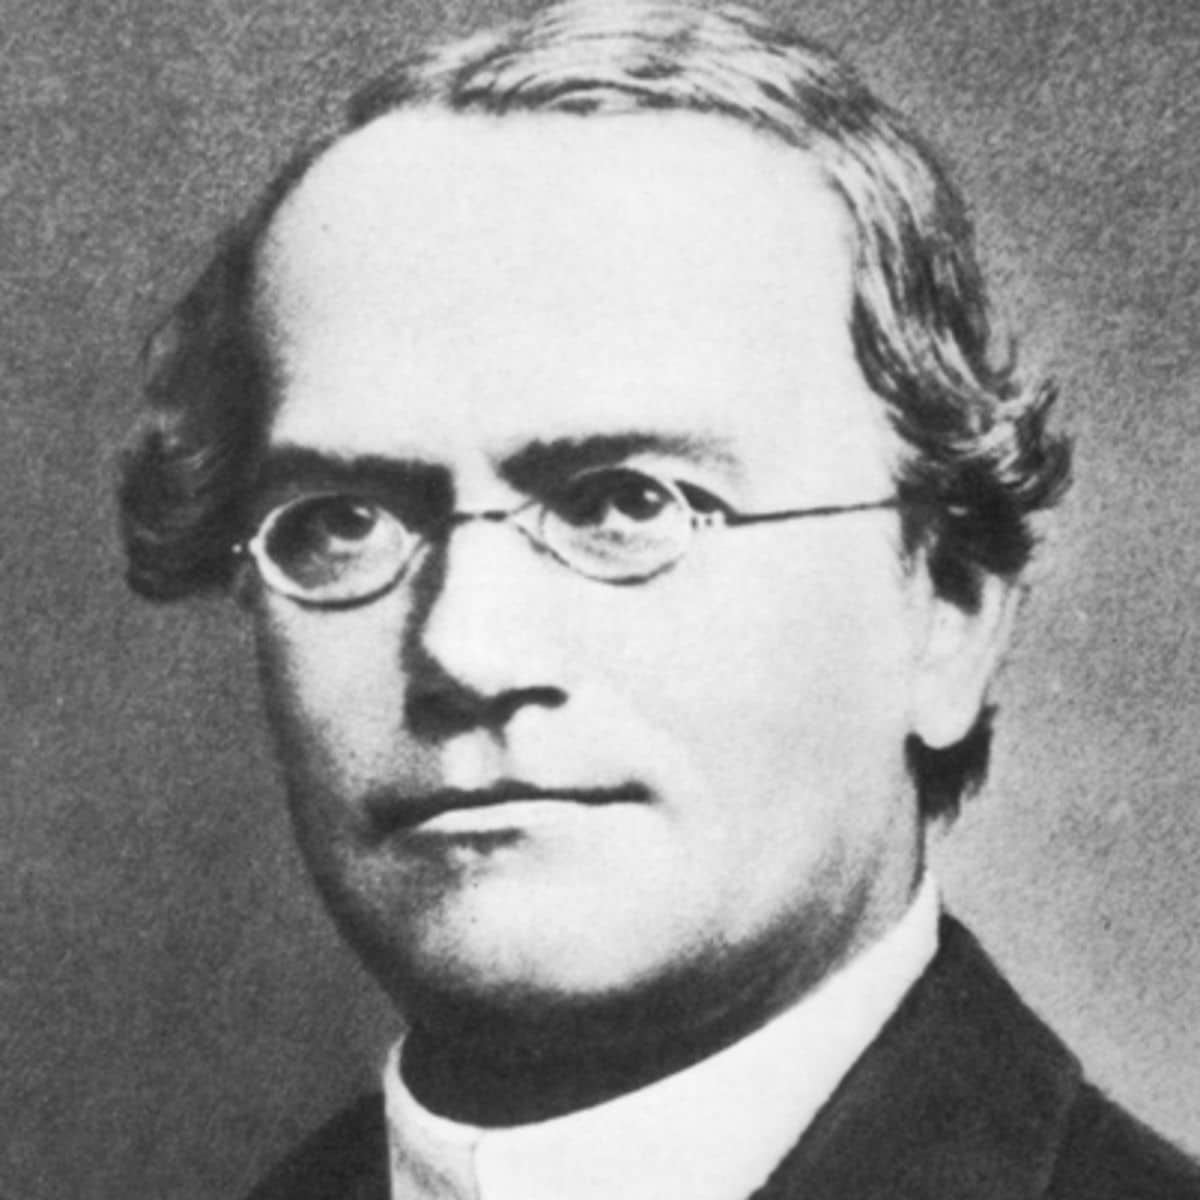 غريغور مندل مؤسس علم الوراثة الحديث